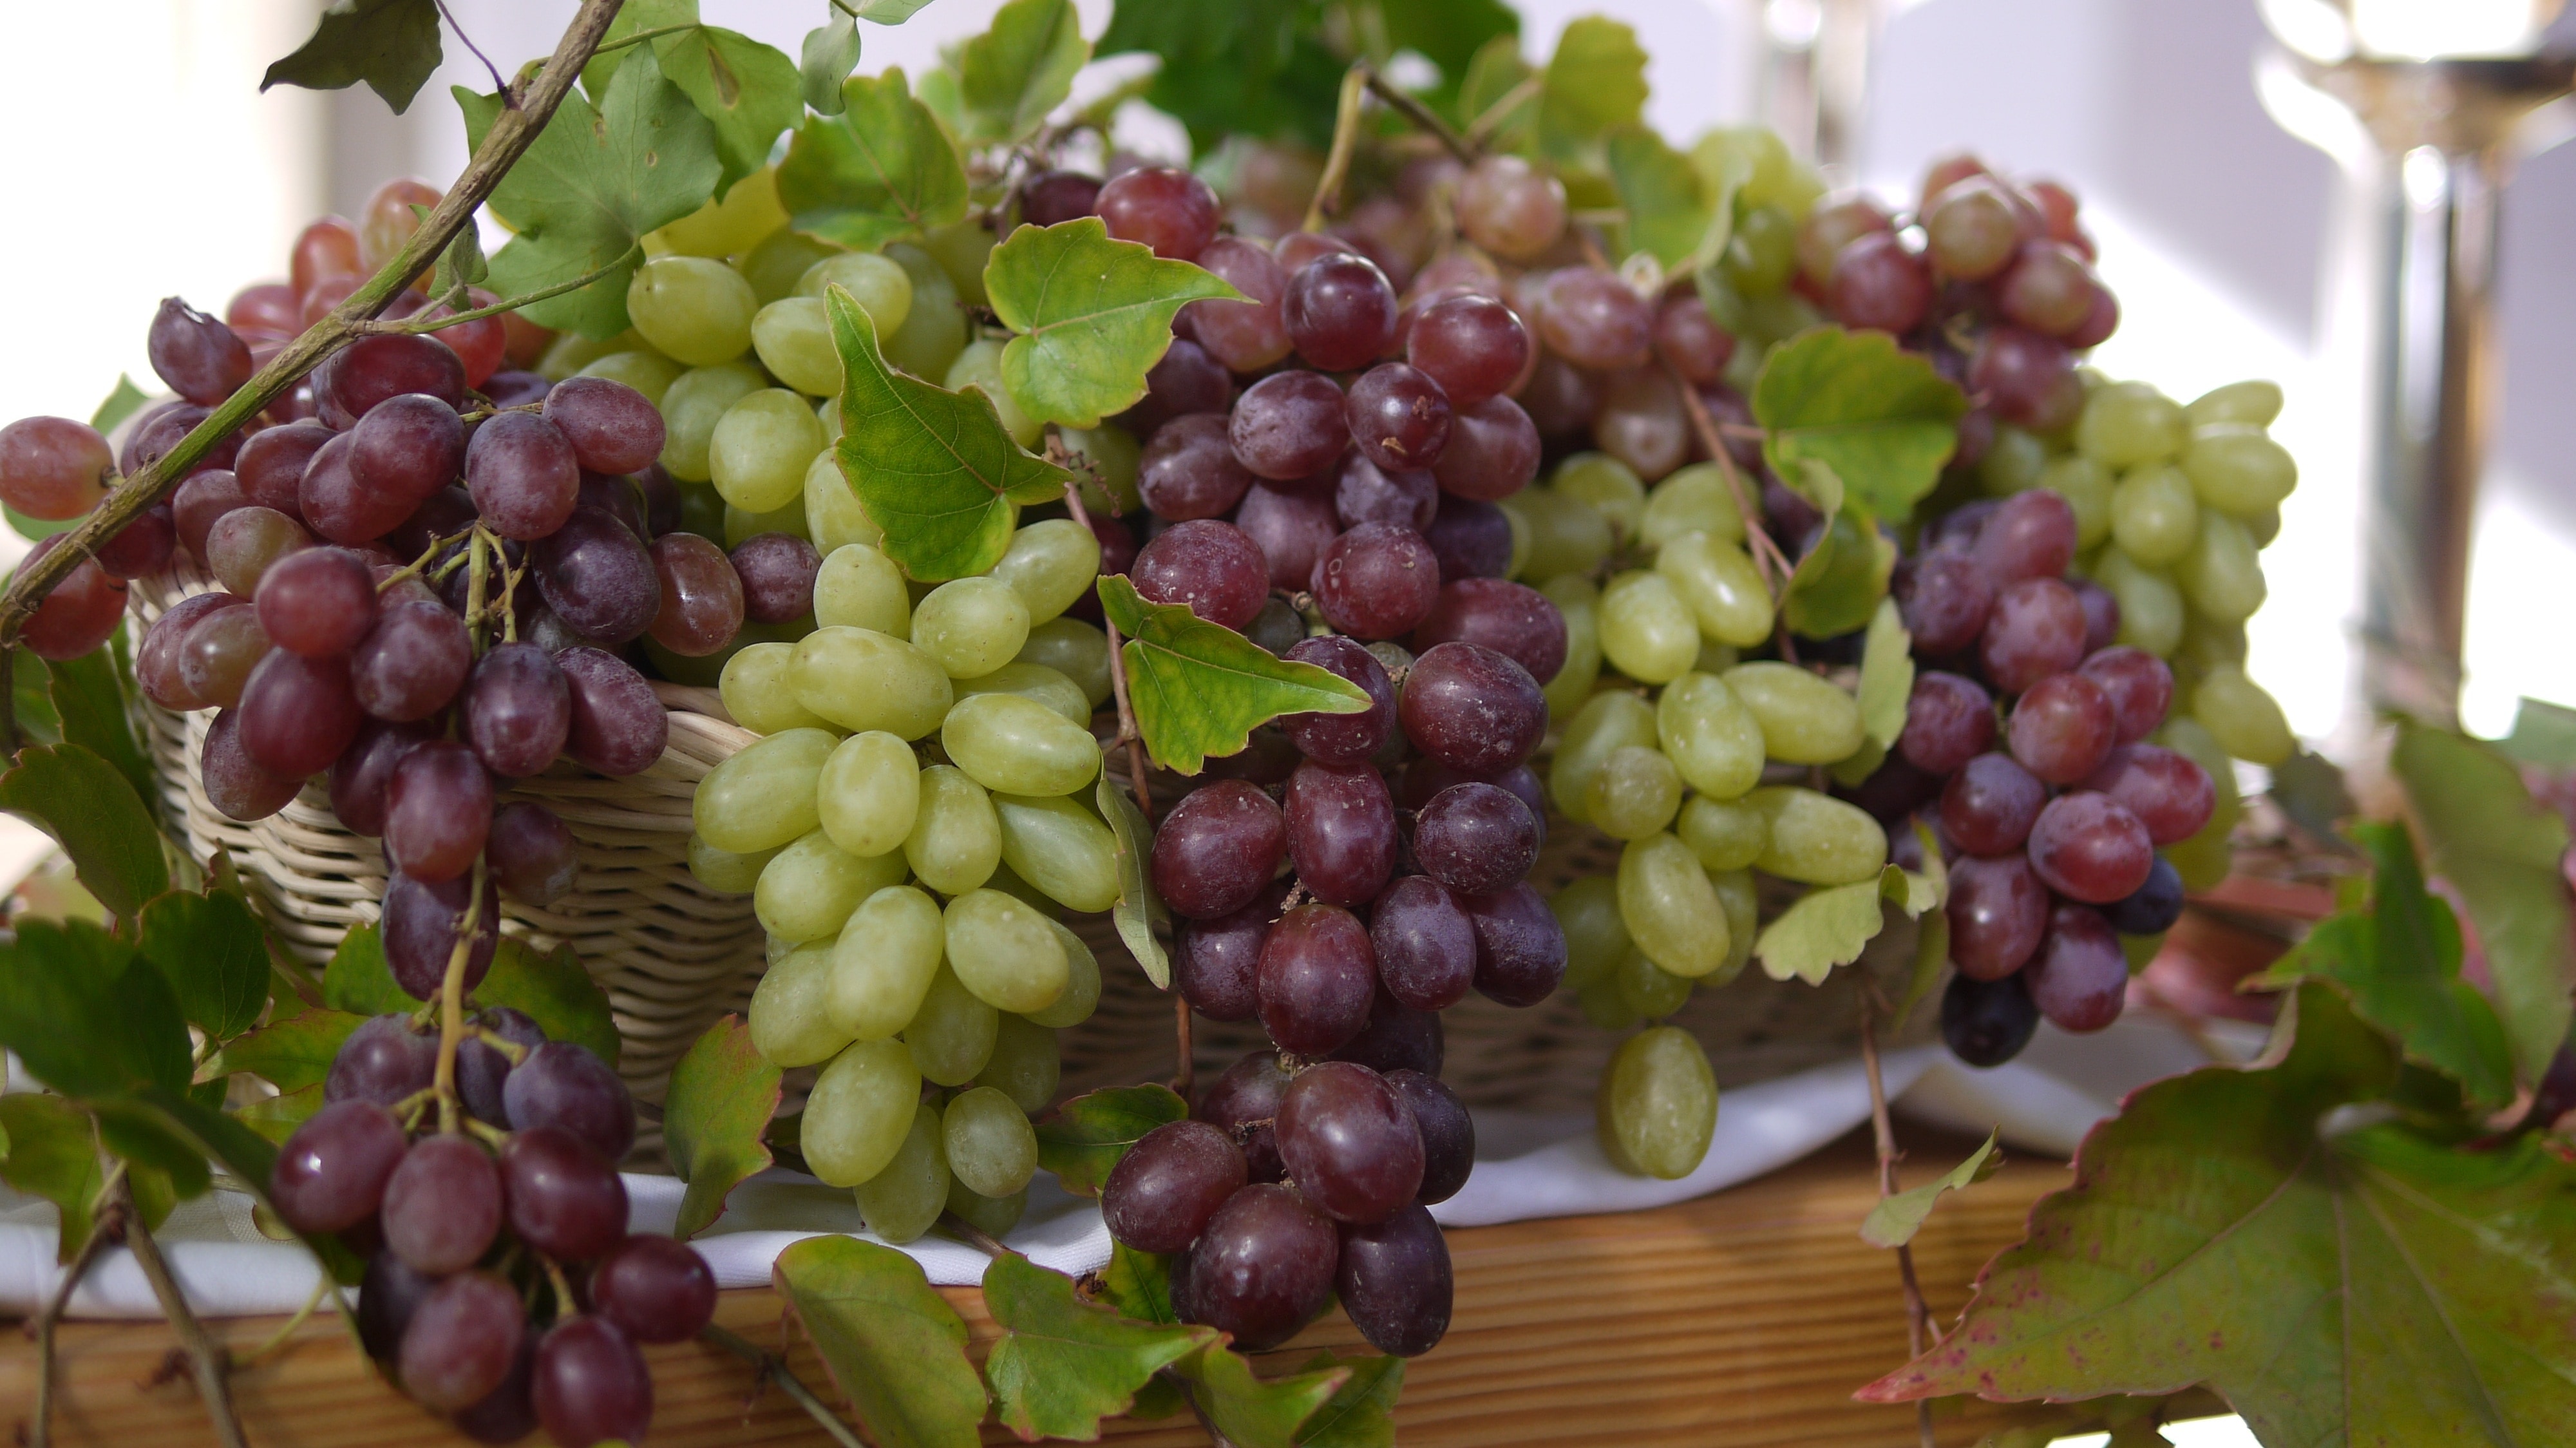 grapes and green grapes